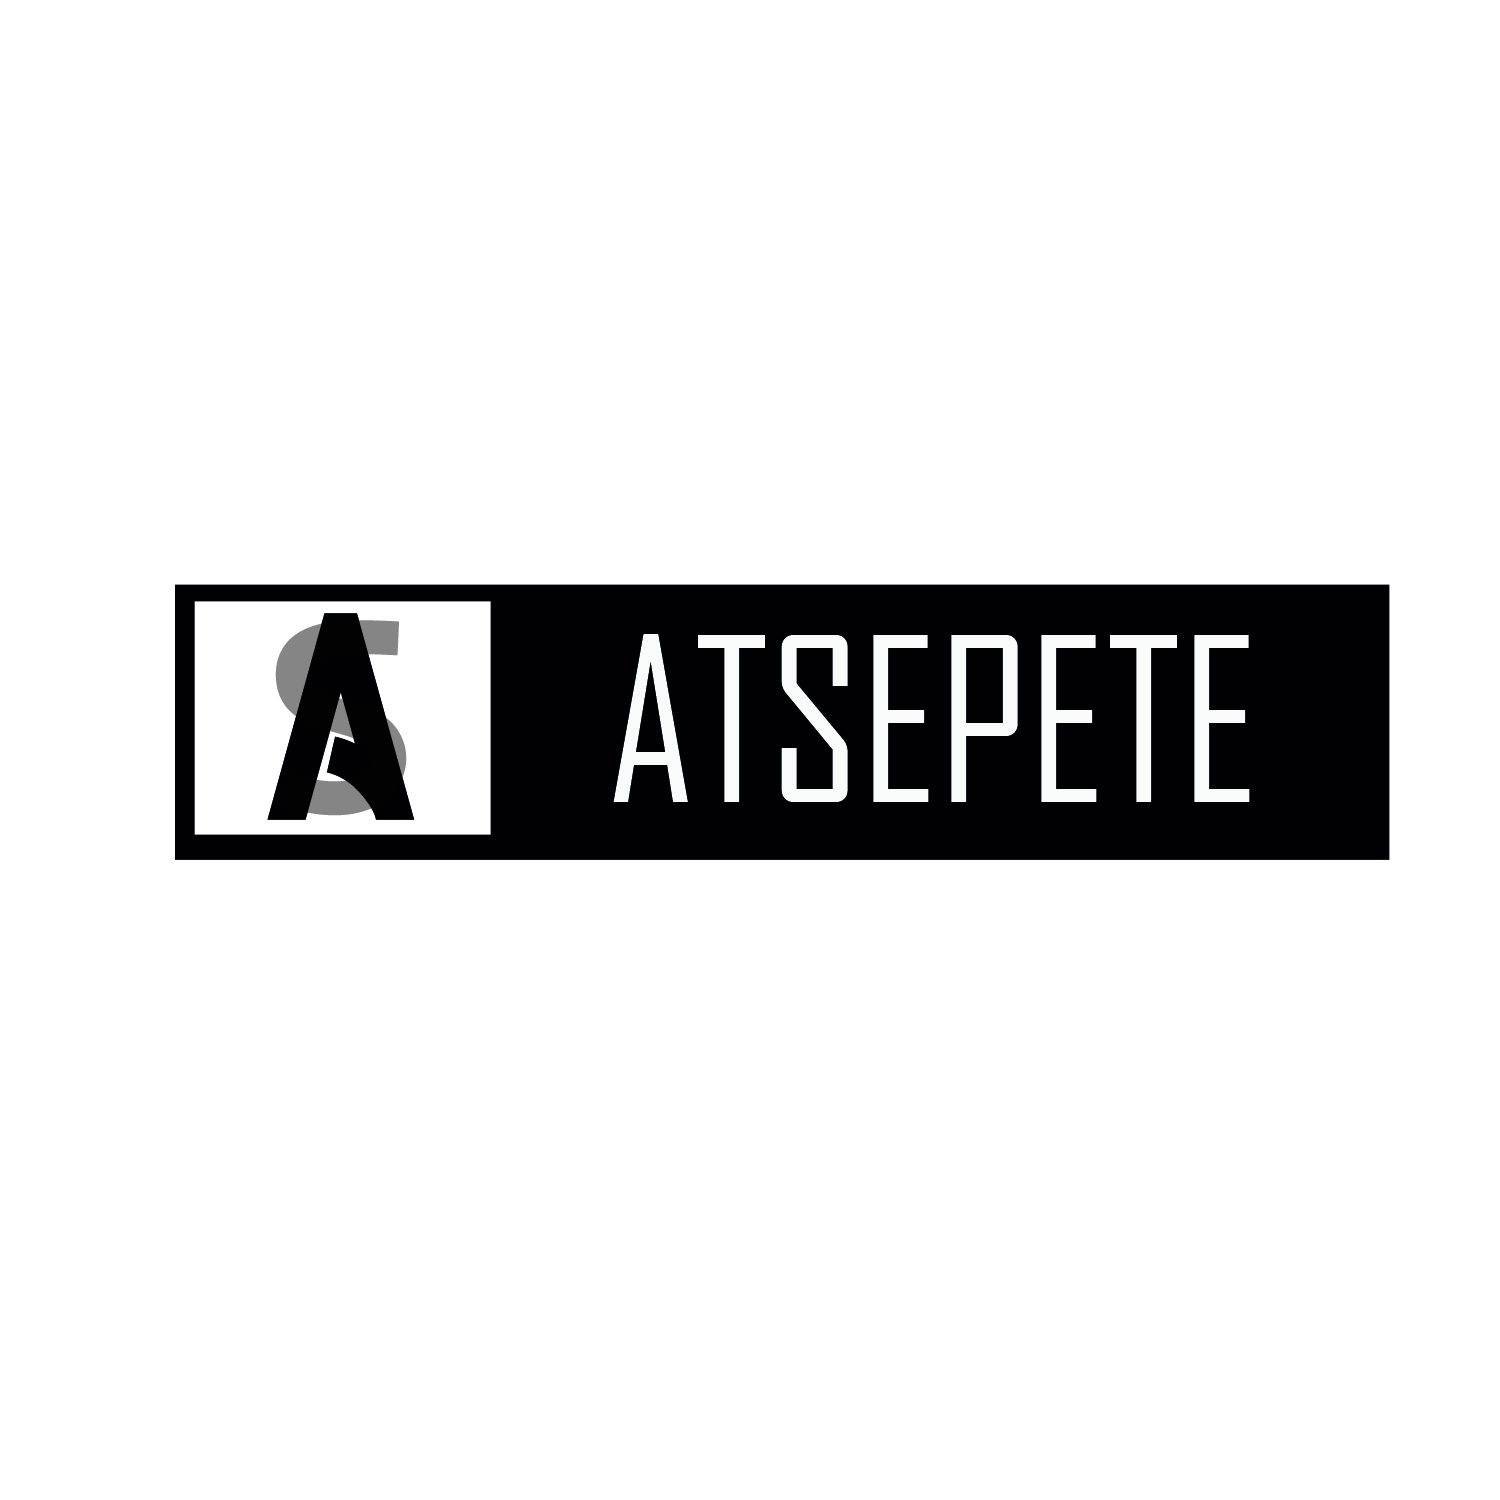 AtSepetee